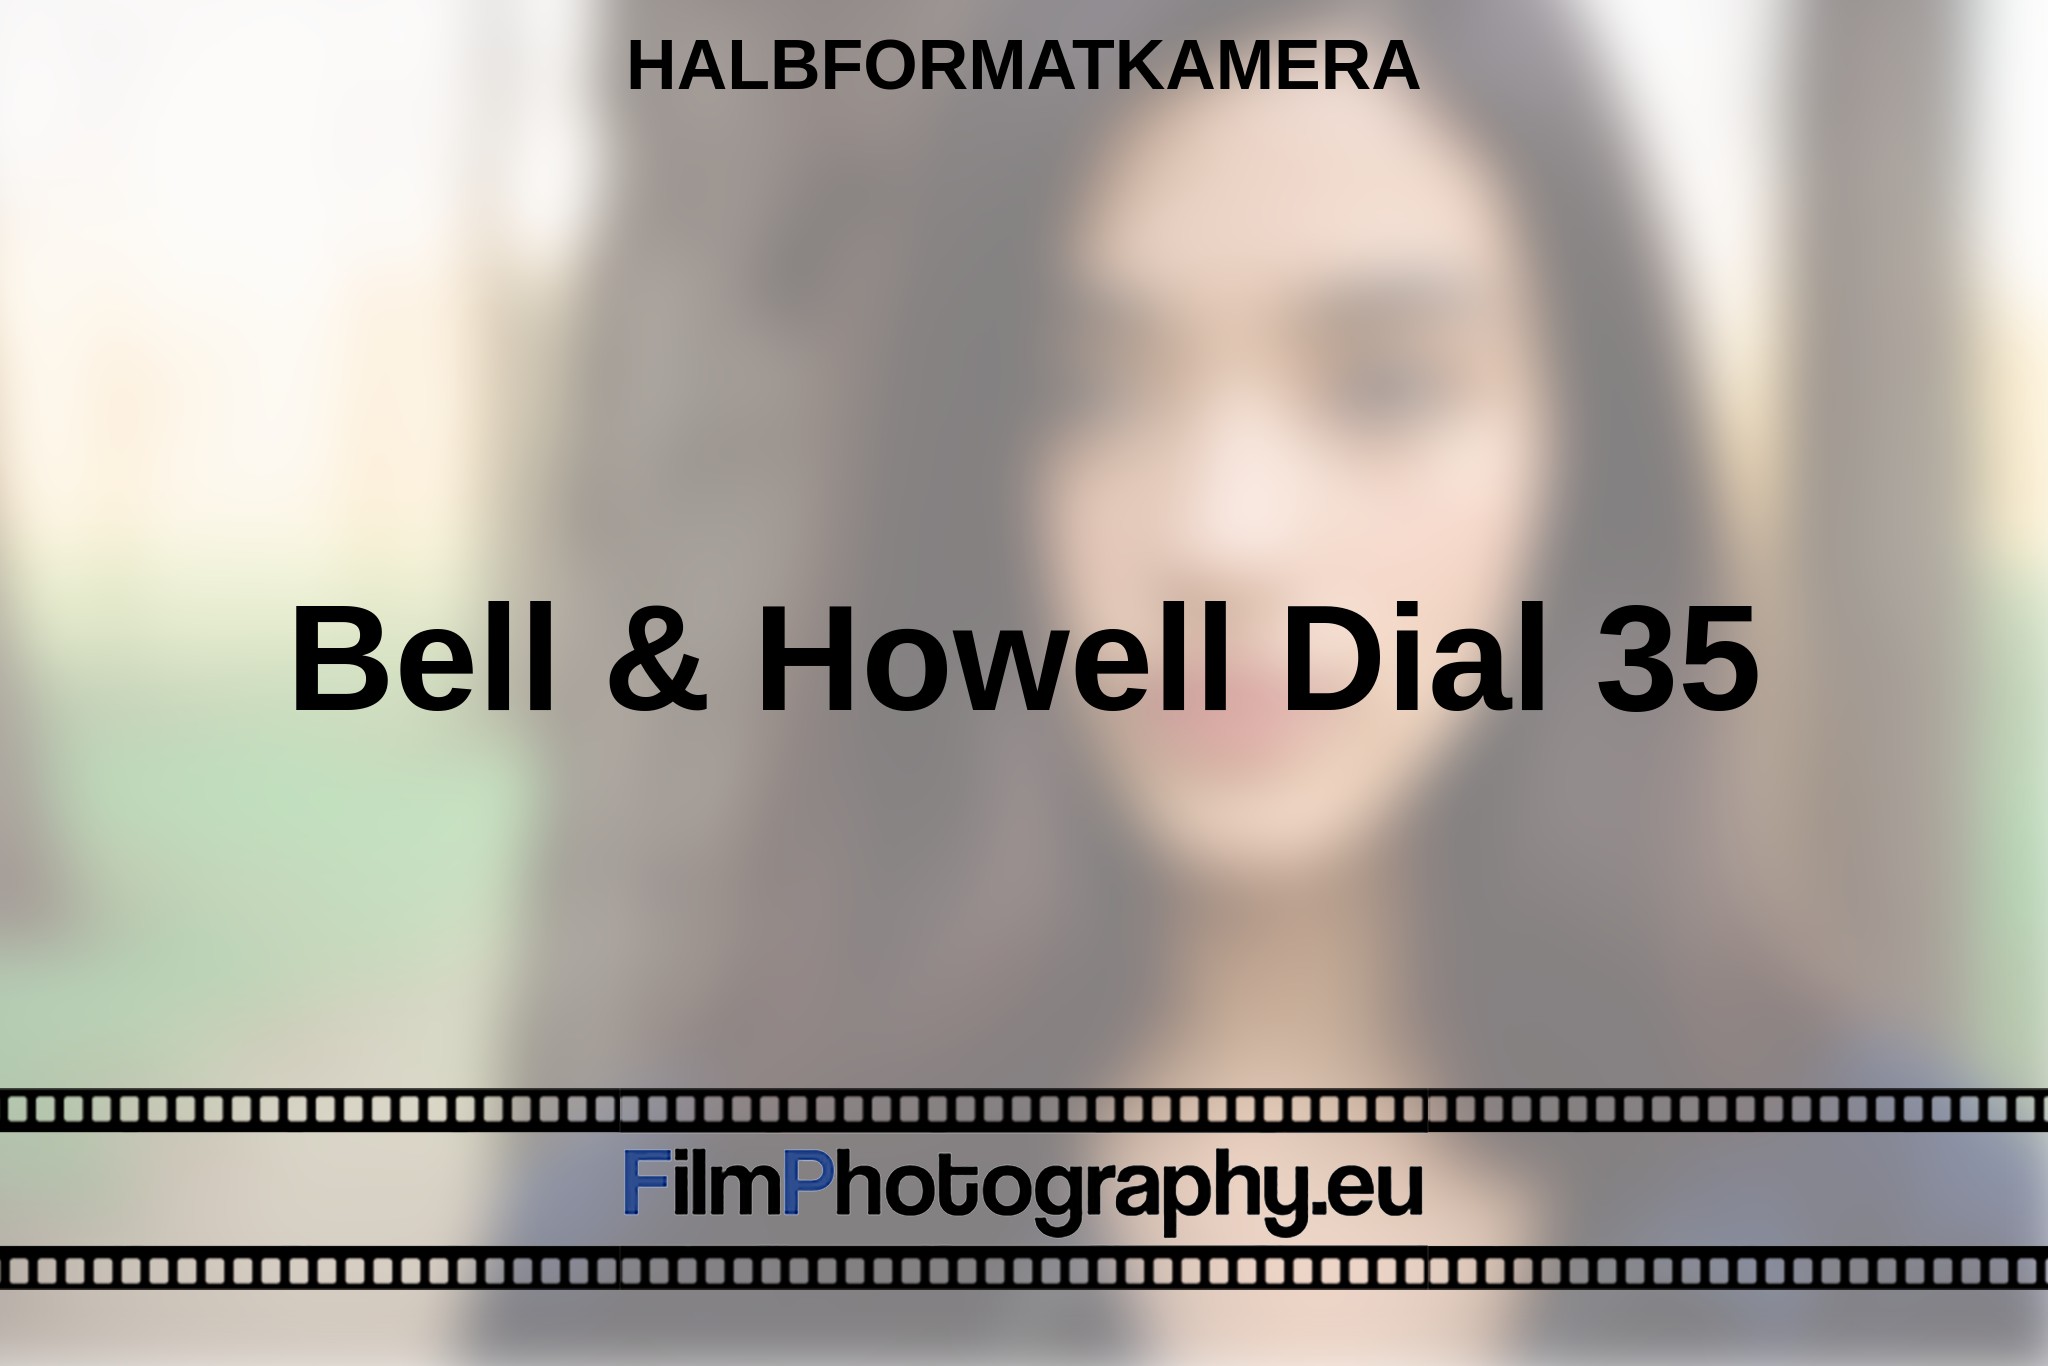 bell-howell-dial-35-halbformatkamera-bnv.jpg